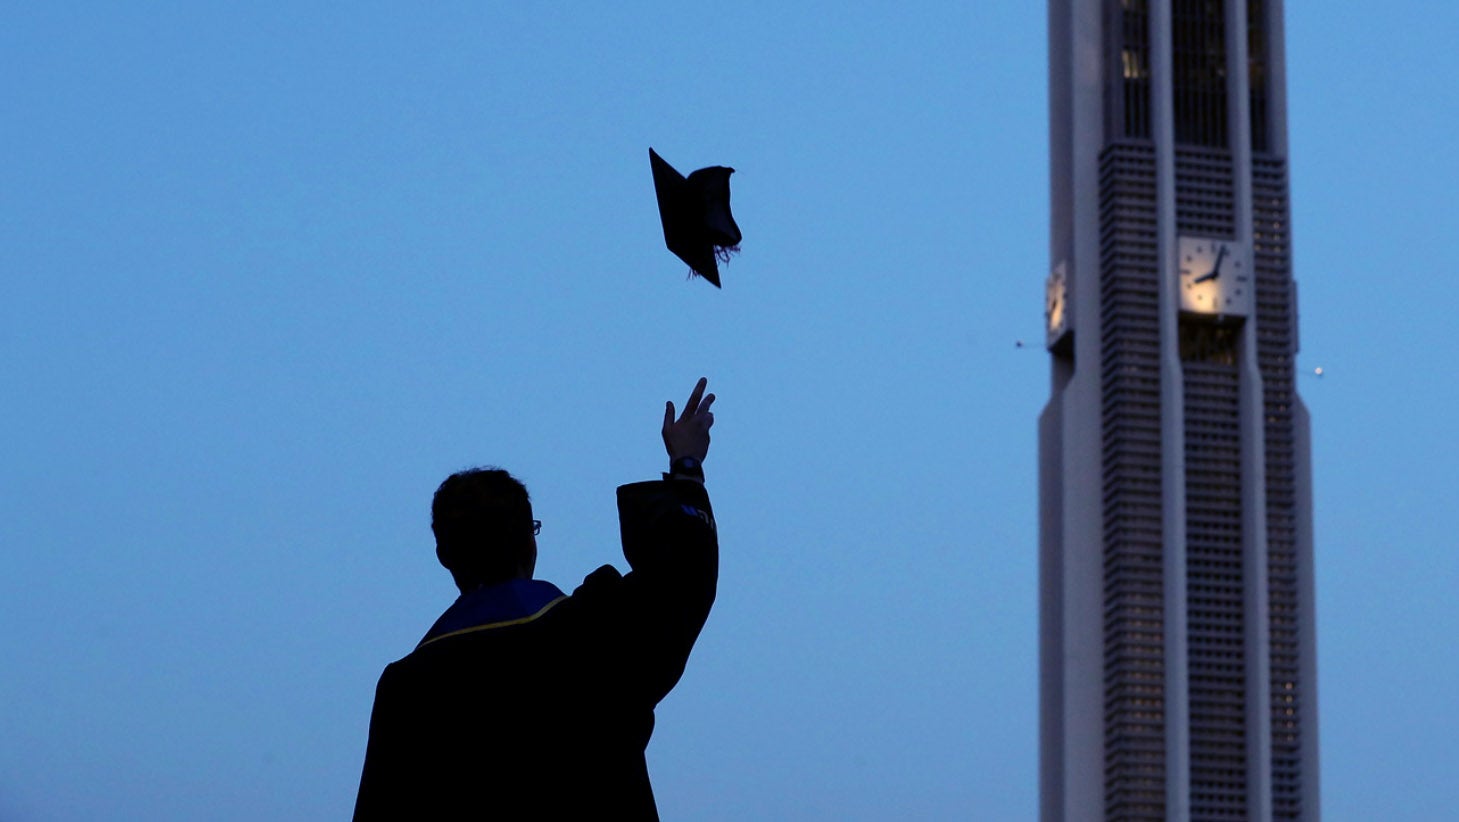 UCR ranks No. 3 in graduating Hispanic students in STEM majors